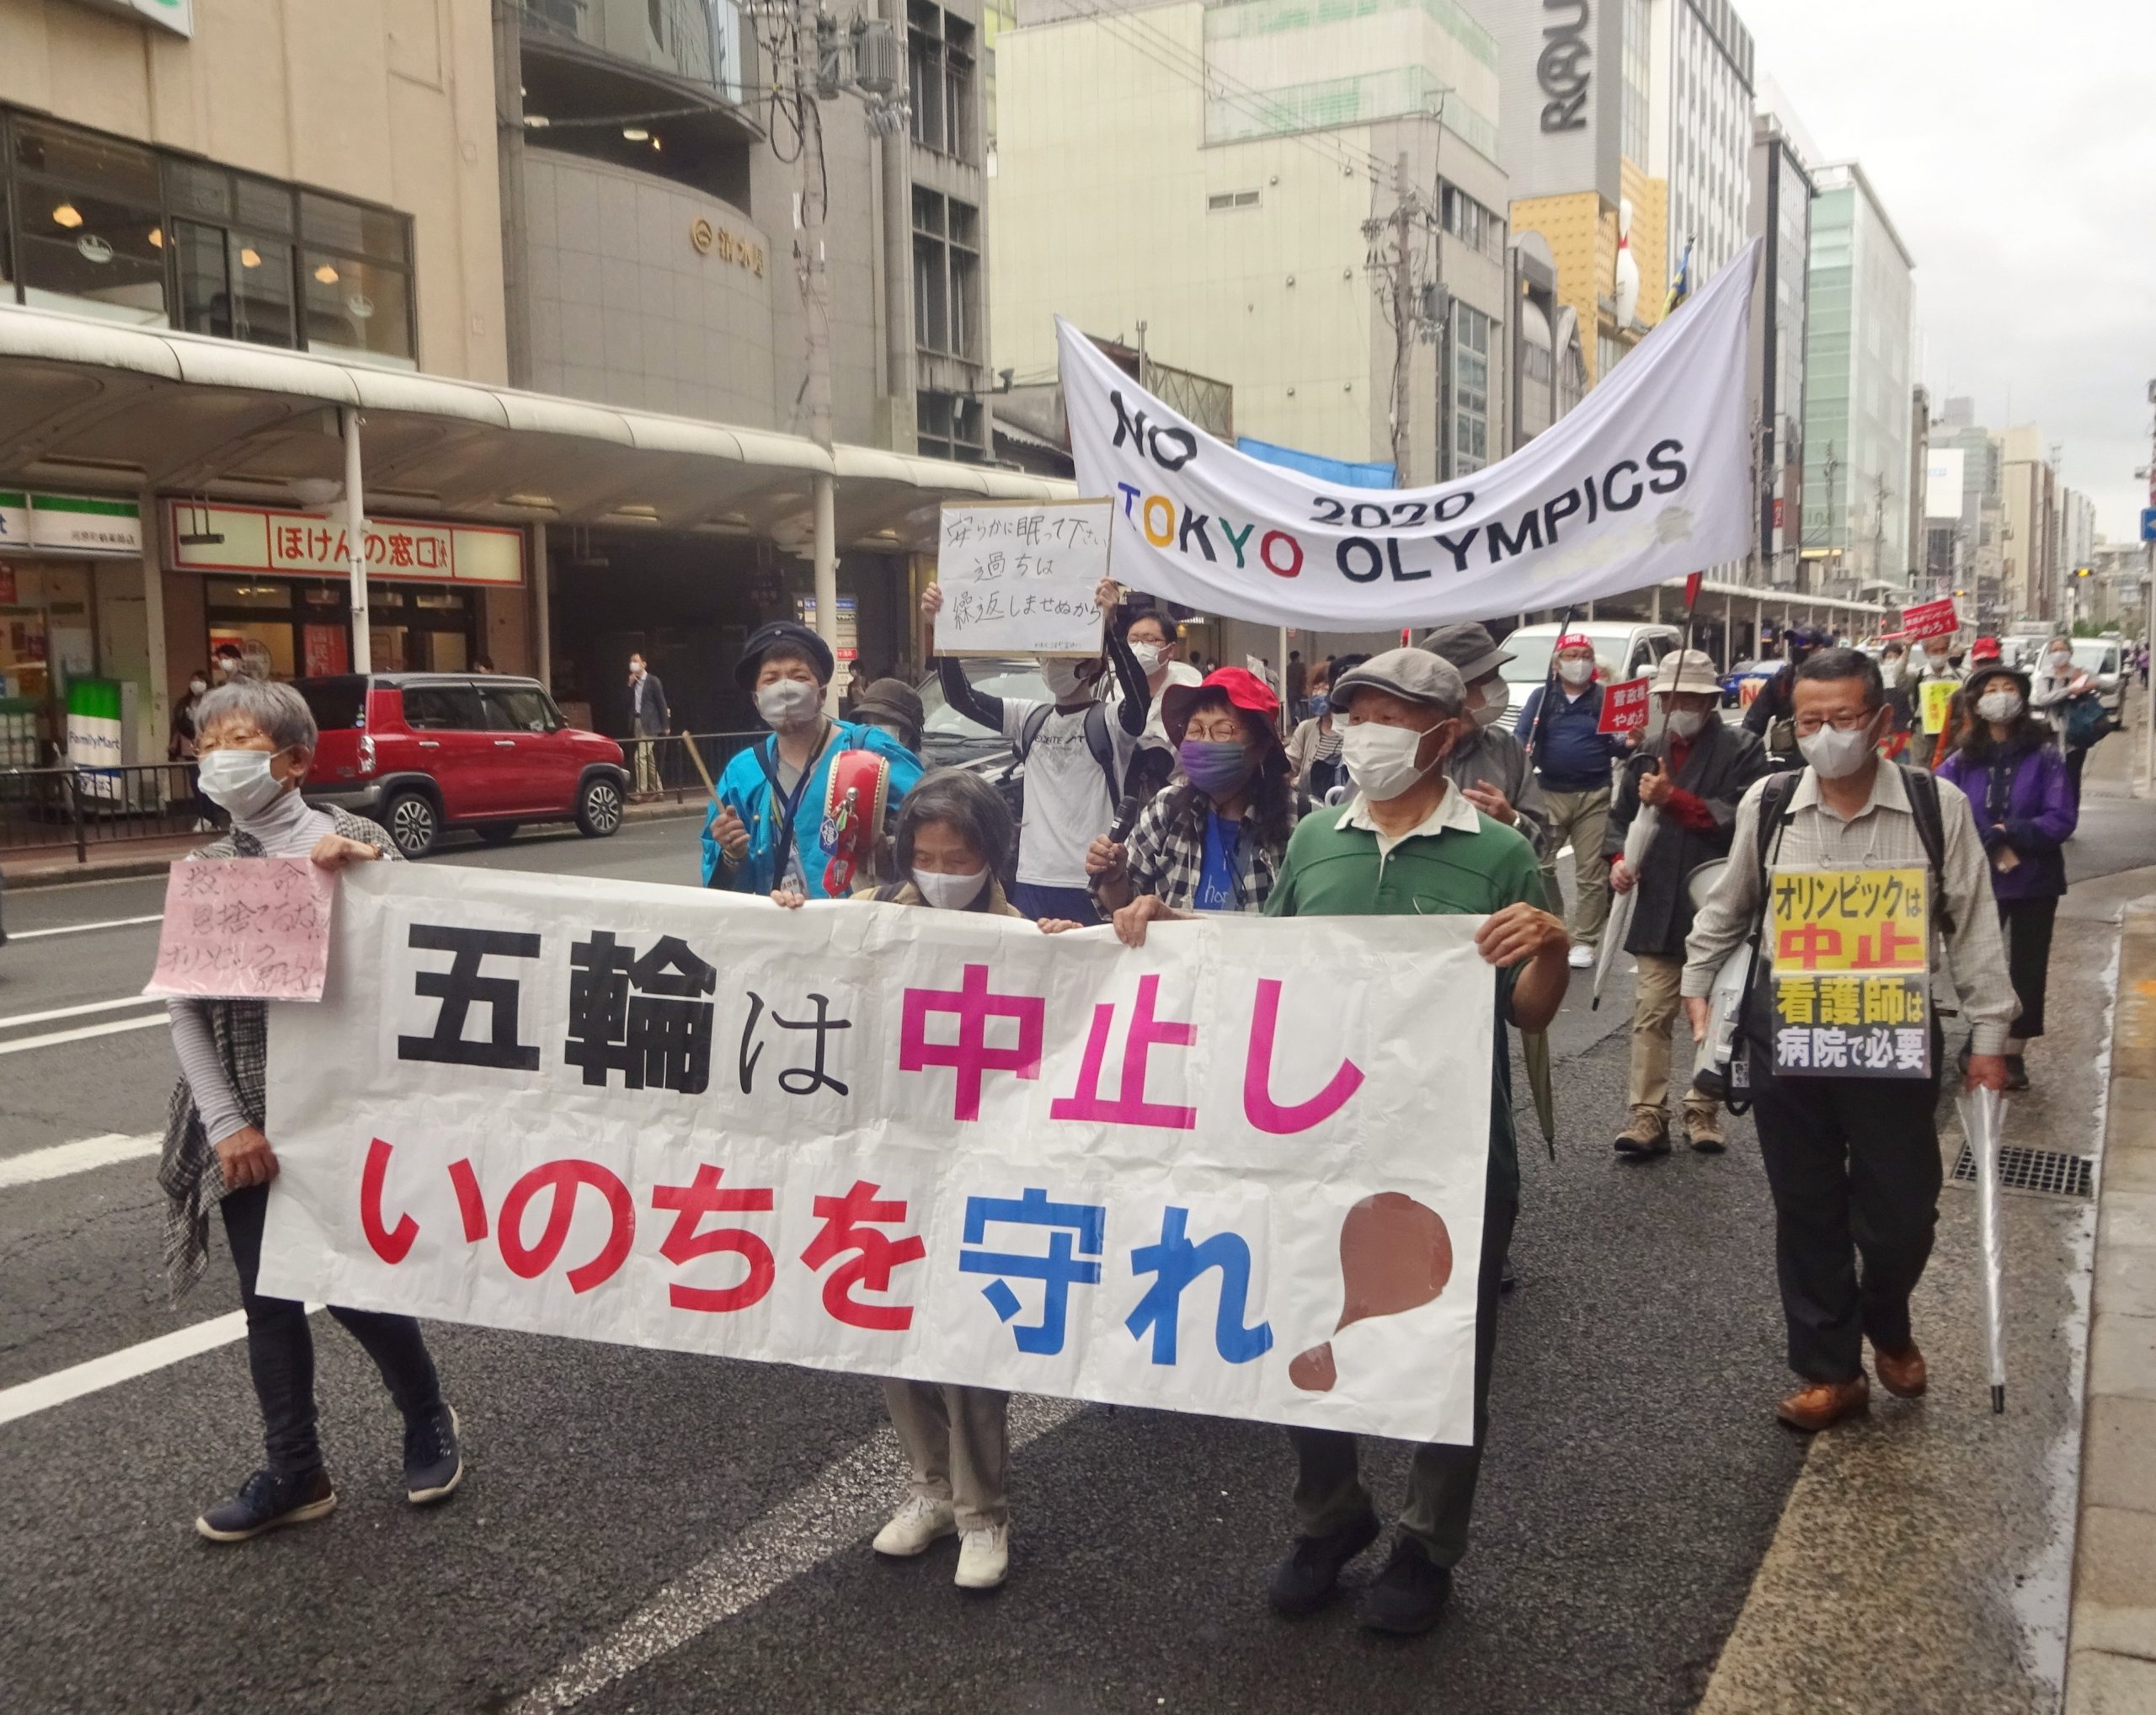 Ιαπωνία: Διαδηλωτές ζήτησαν την ακύρωση των Ολυμπιακών Αγώνων [Video]